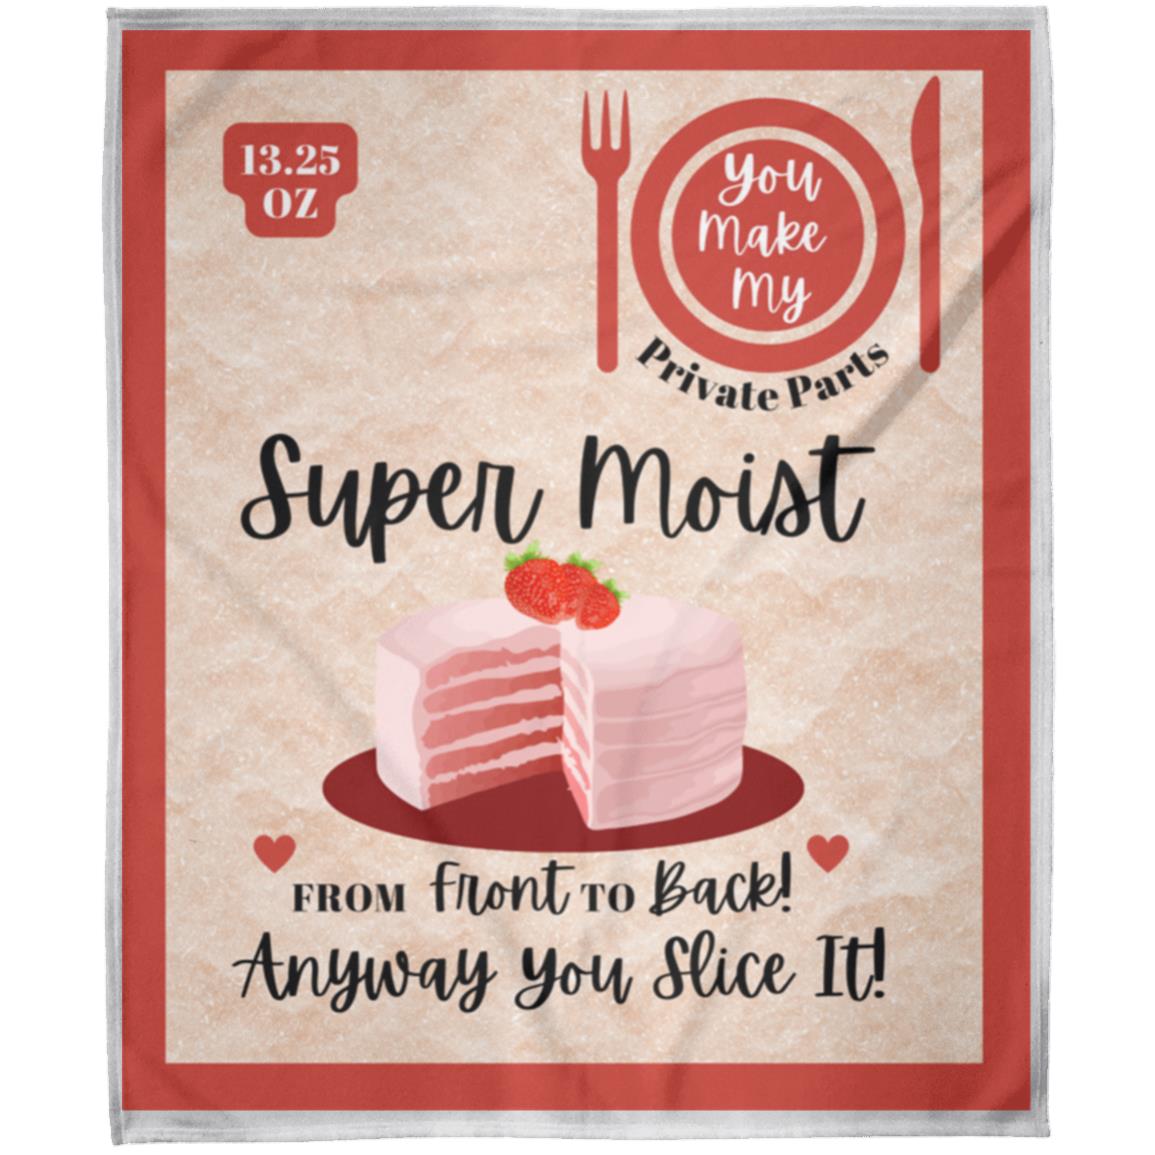 Super Moist Cake Mix Blanket